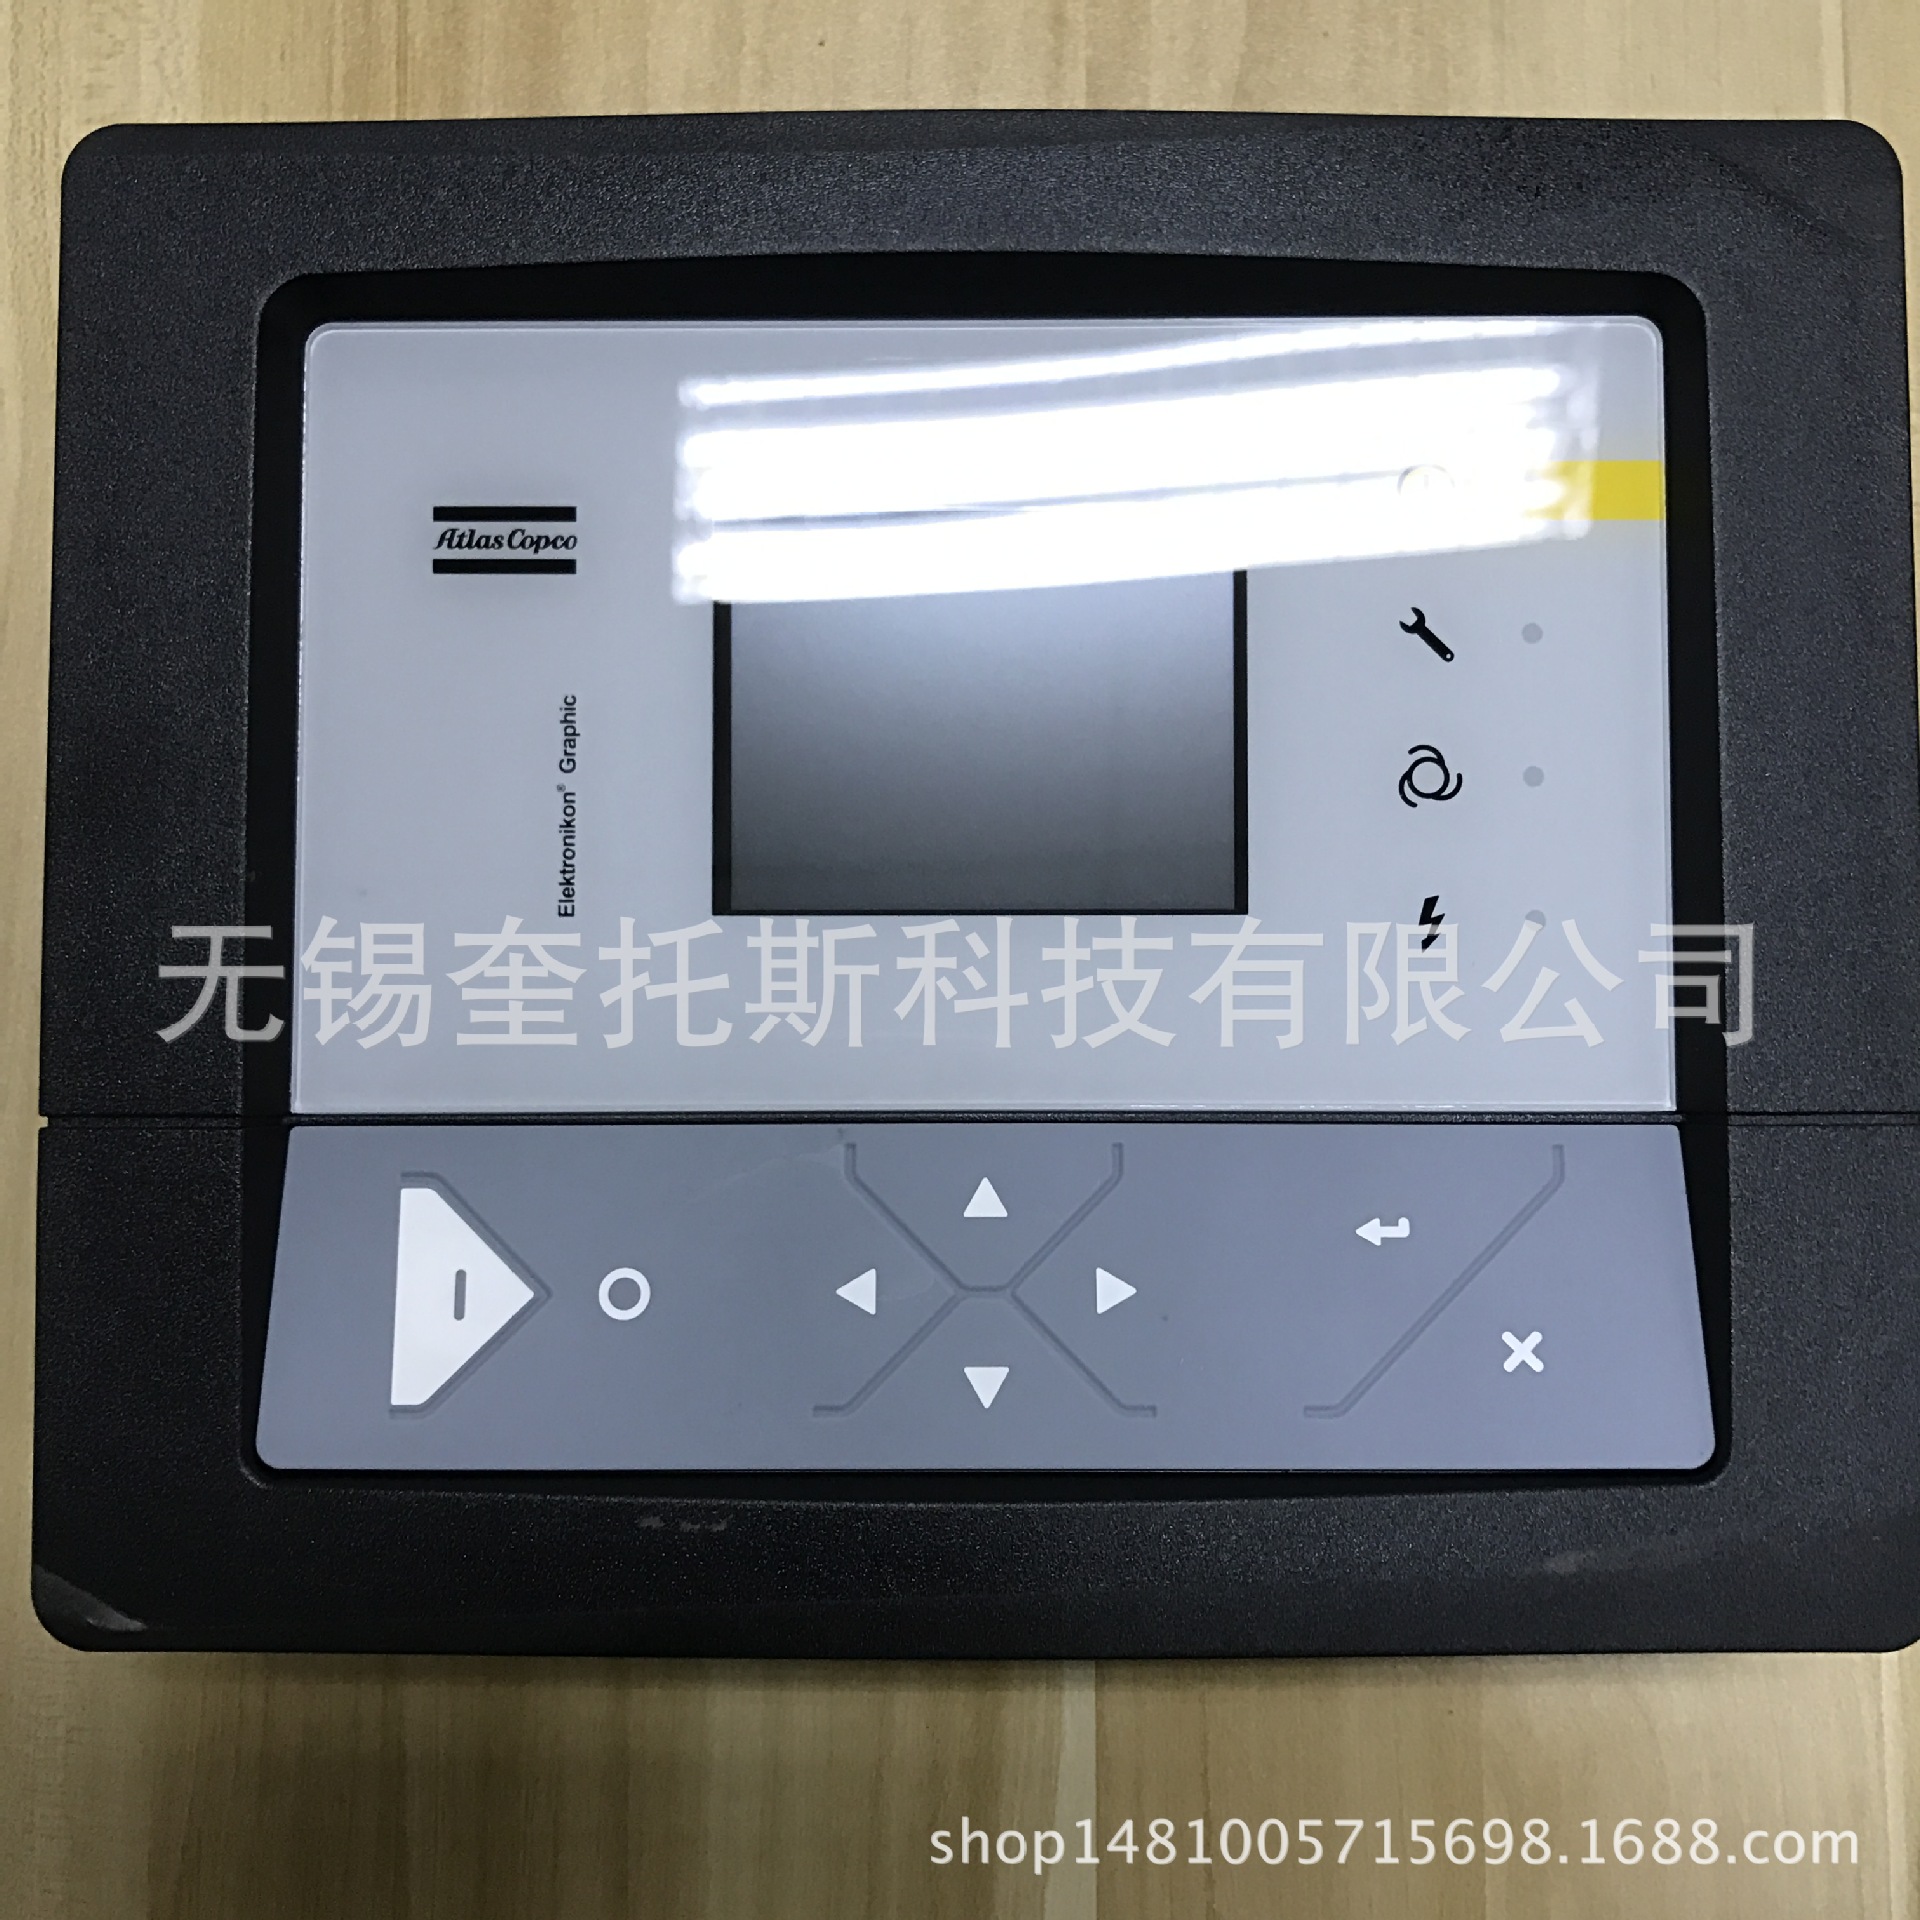 压缩设备配件 阿特拉斯空压机控制器显示屏19005200121